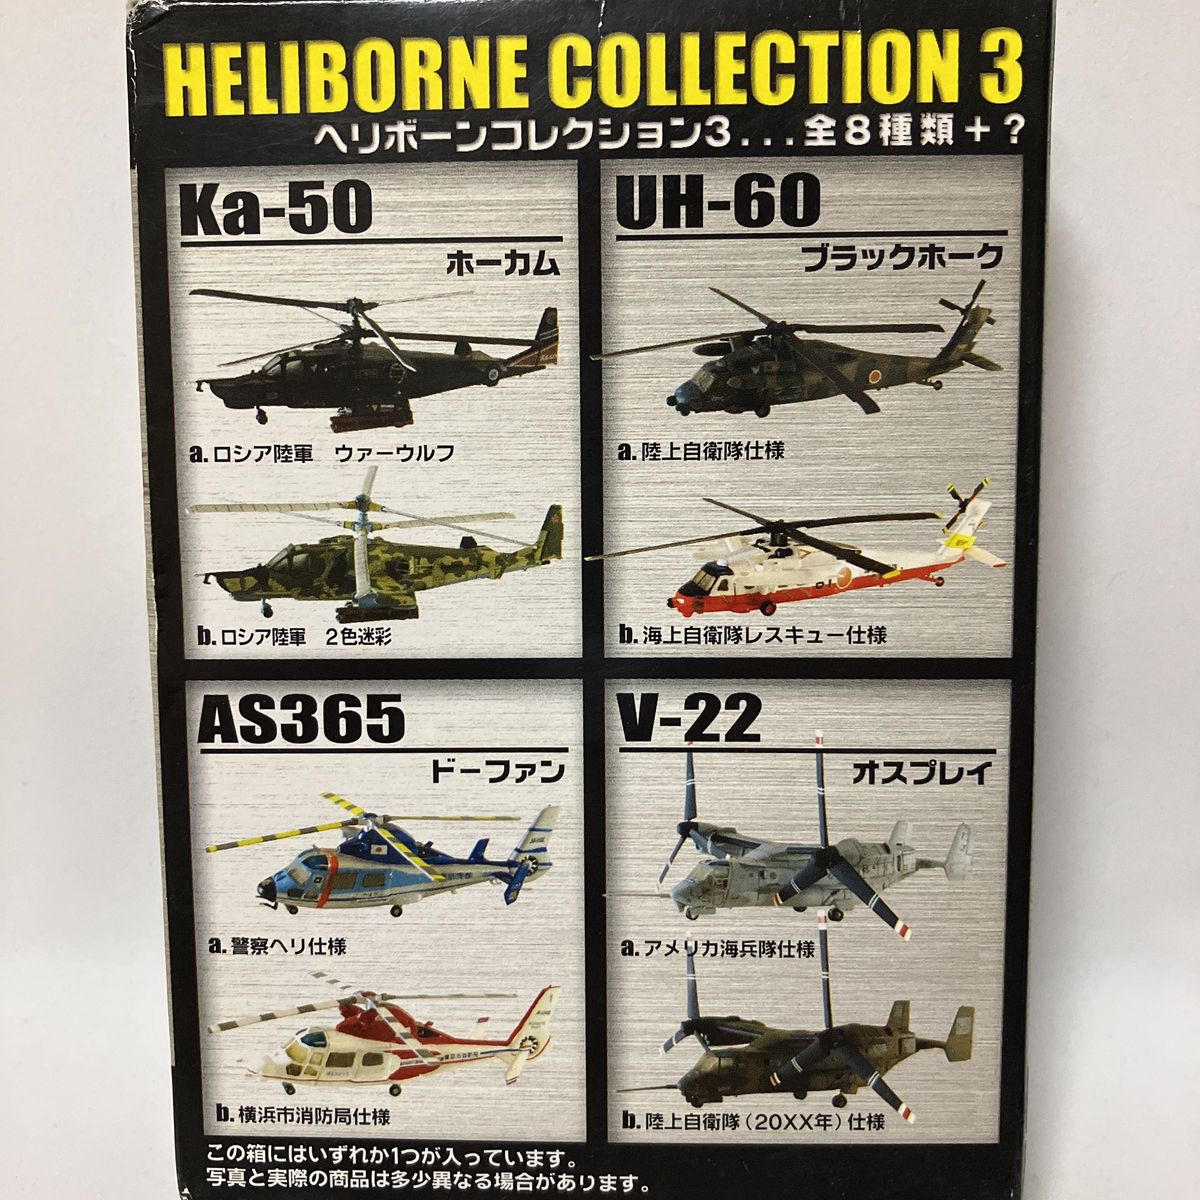 エフトイズ。ヘリボーンコレクション3。UH-60.陸上自衛隊仕様、一機